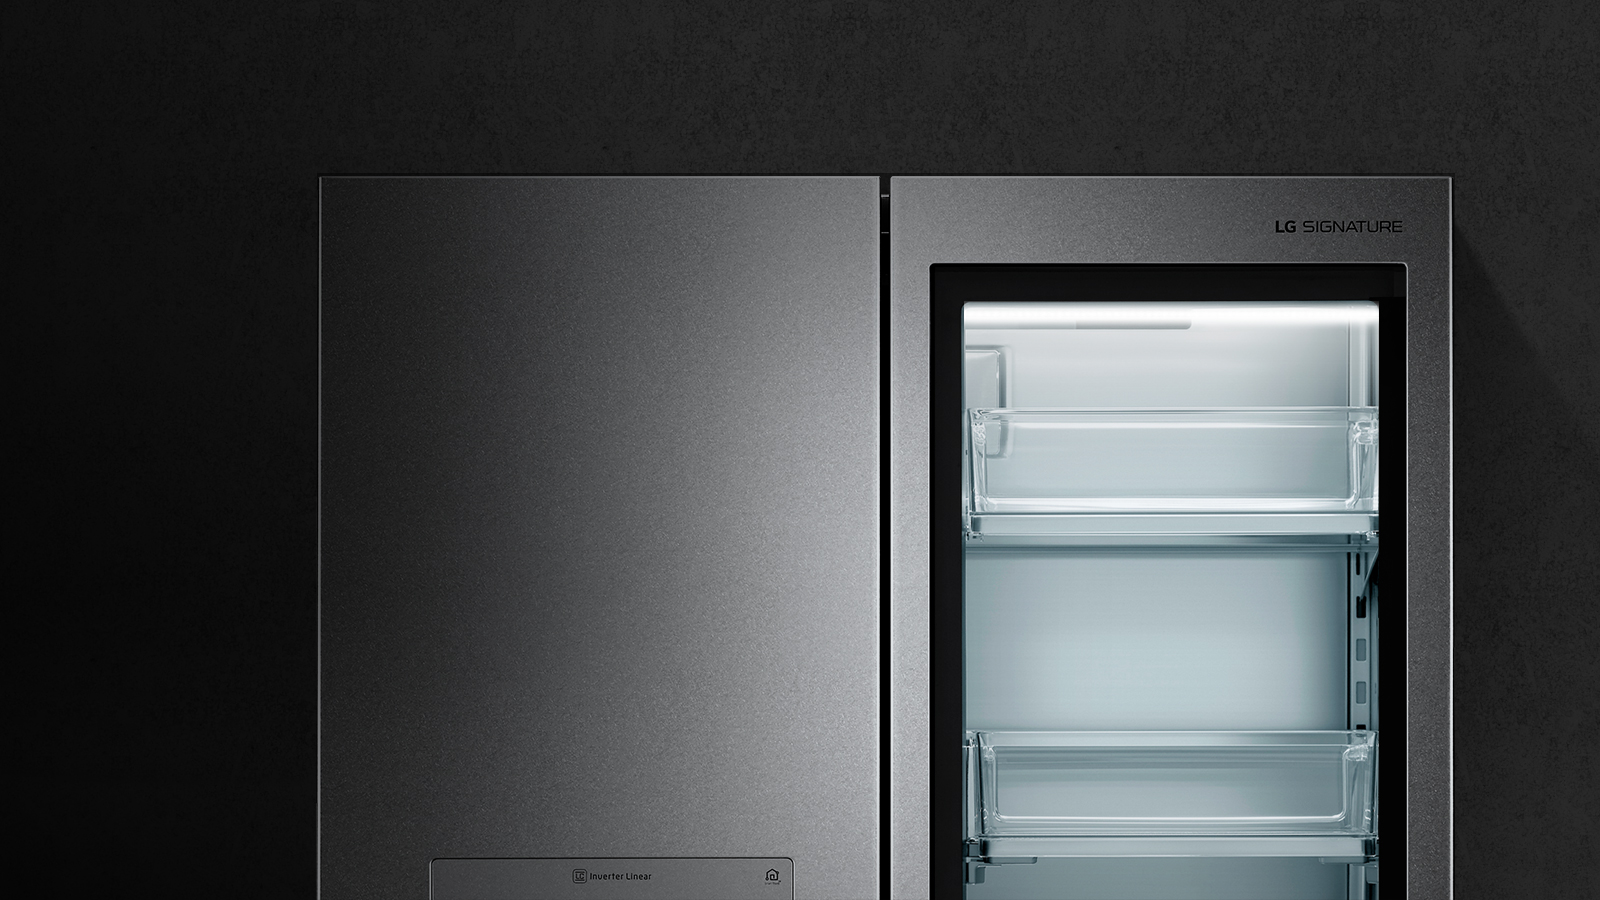 Luxury Closeup Image Of Instaview Door In Door Refrigerator - Lg Signature  4 Door Refrigerator - 1600x900 Wallpaper 